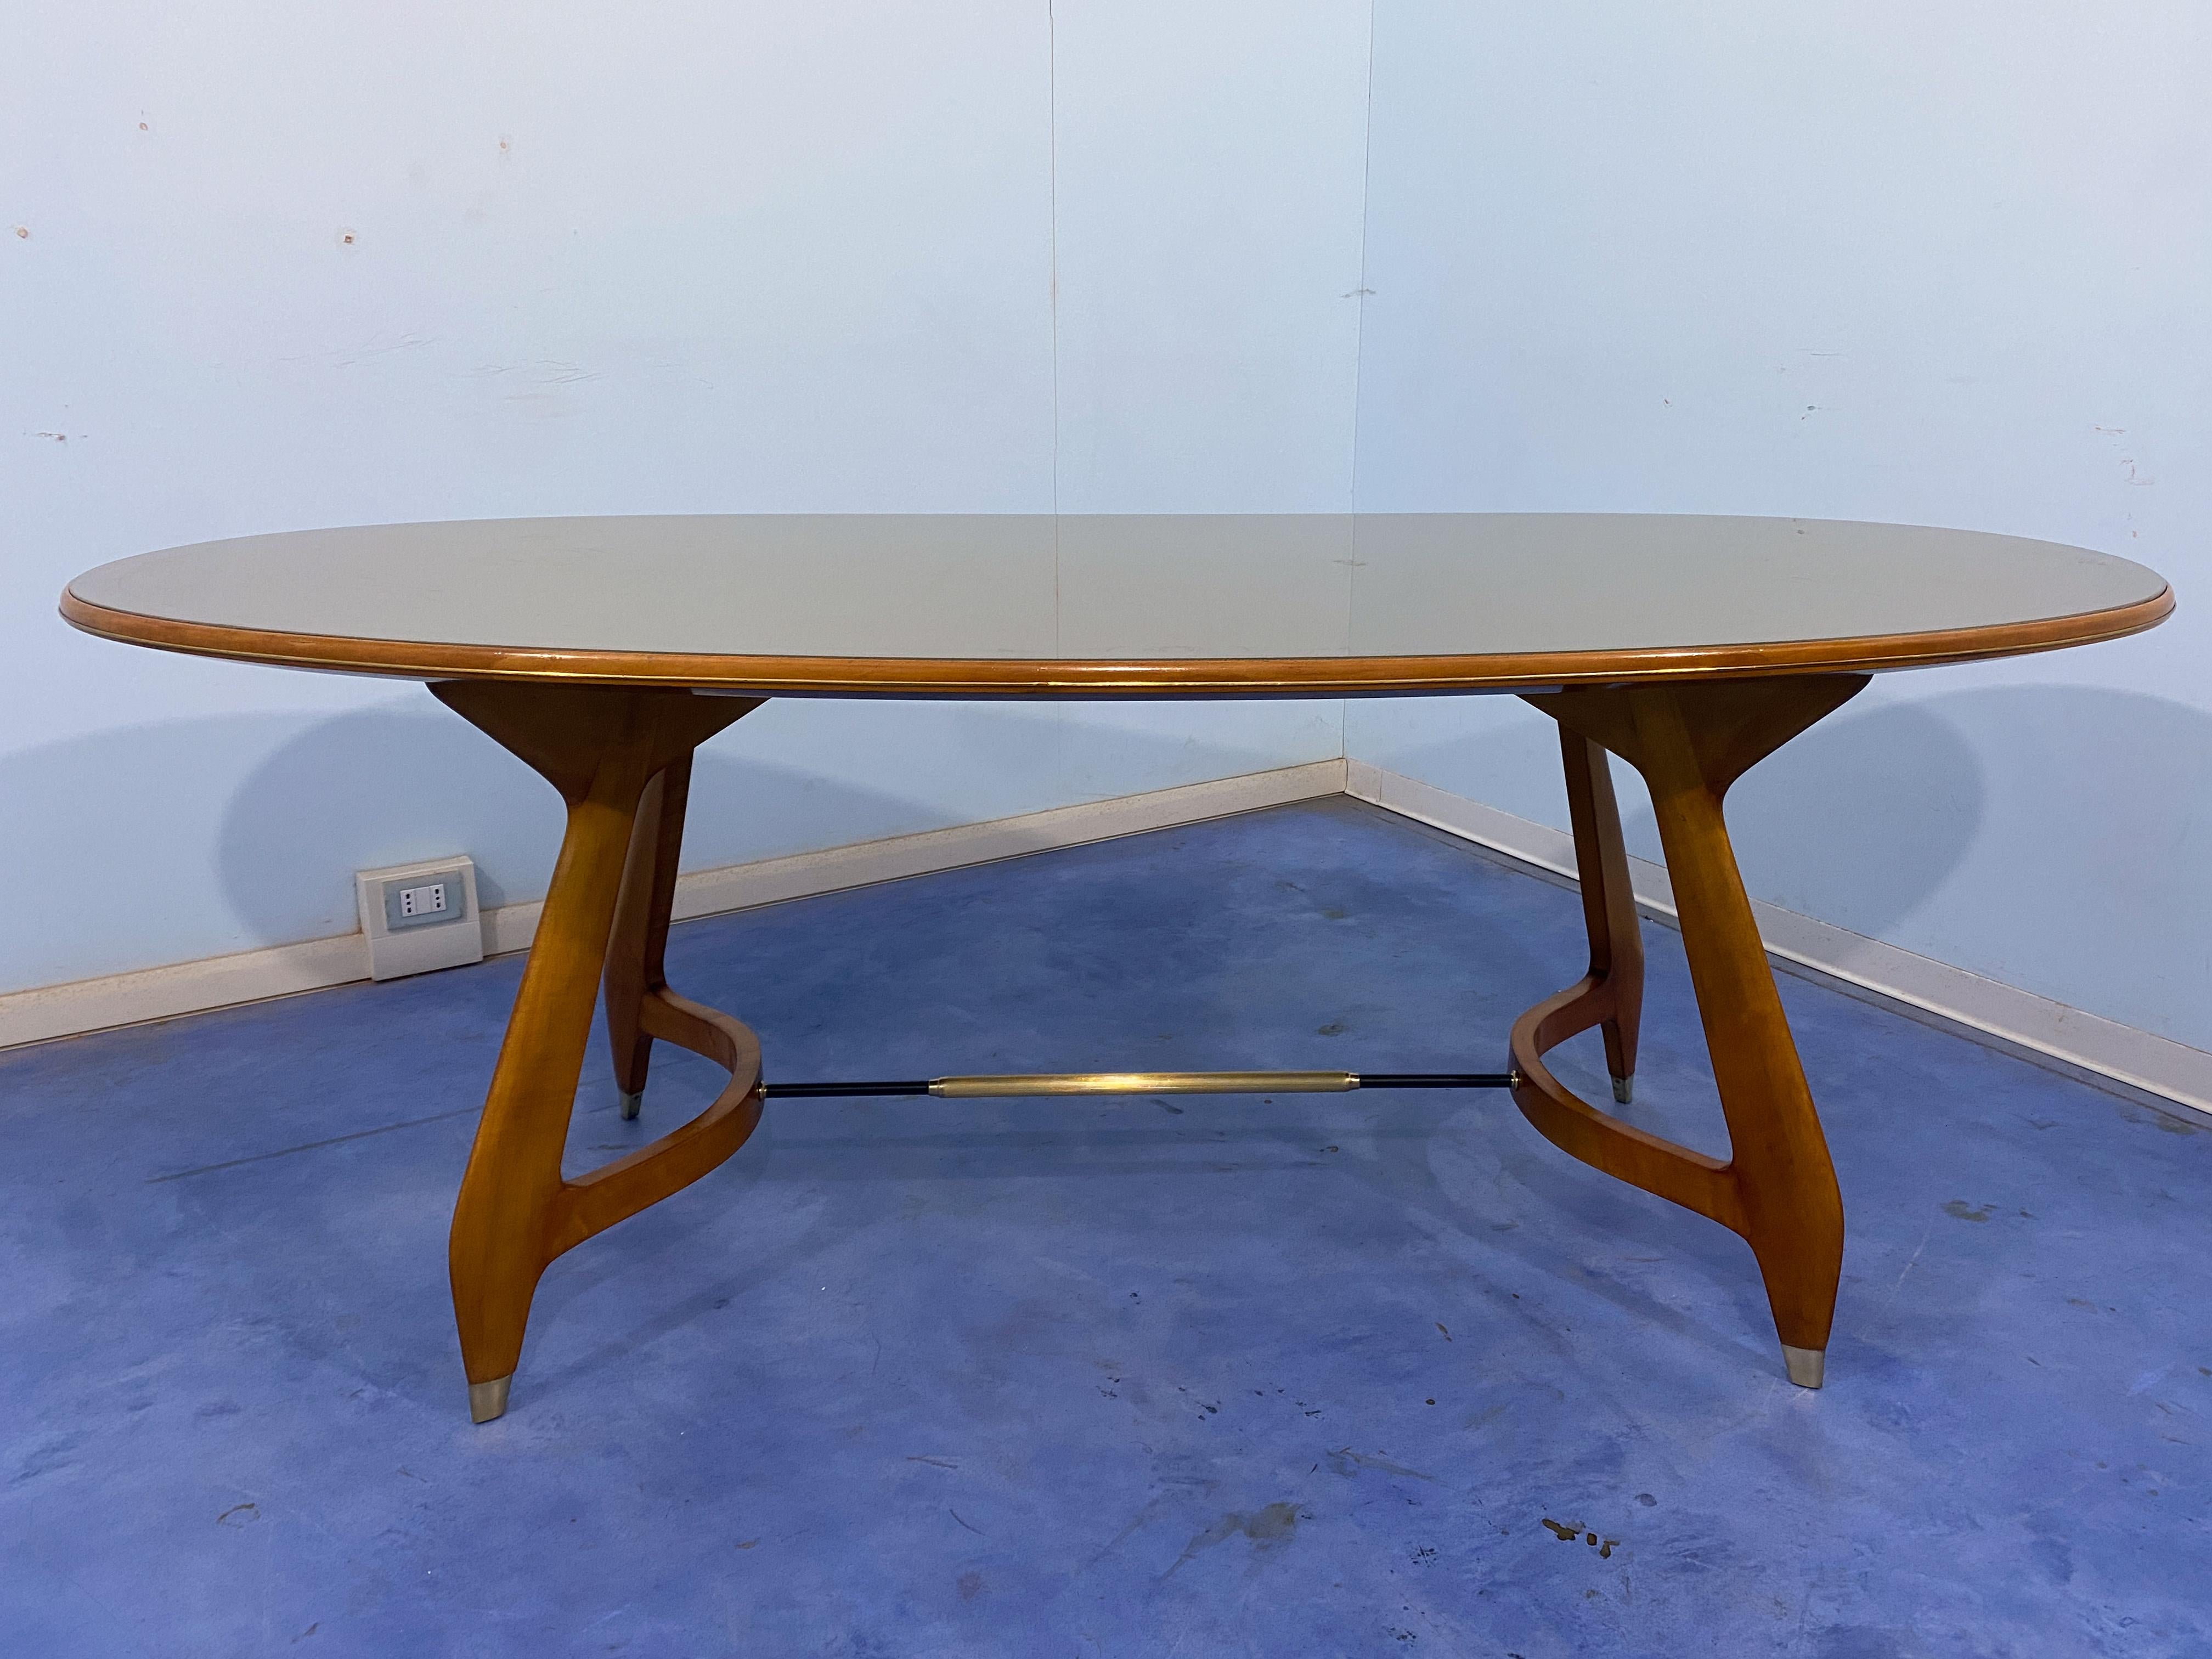 Dieser ovale Esstisch aus der Mitte des Jahrhunderts ist ein raffiniertes und elegantes Möbelstück, das in den 1950er Jahren in Italien hergestellt und Augusto Romano zugeschrieben wird. Der Tisch hat eine Platte aus grünem Glas, die mit einer